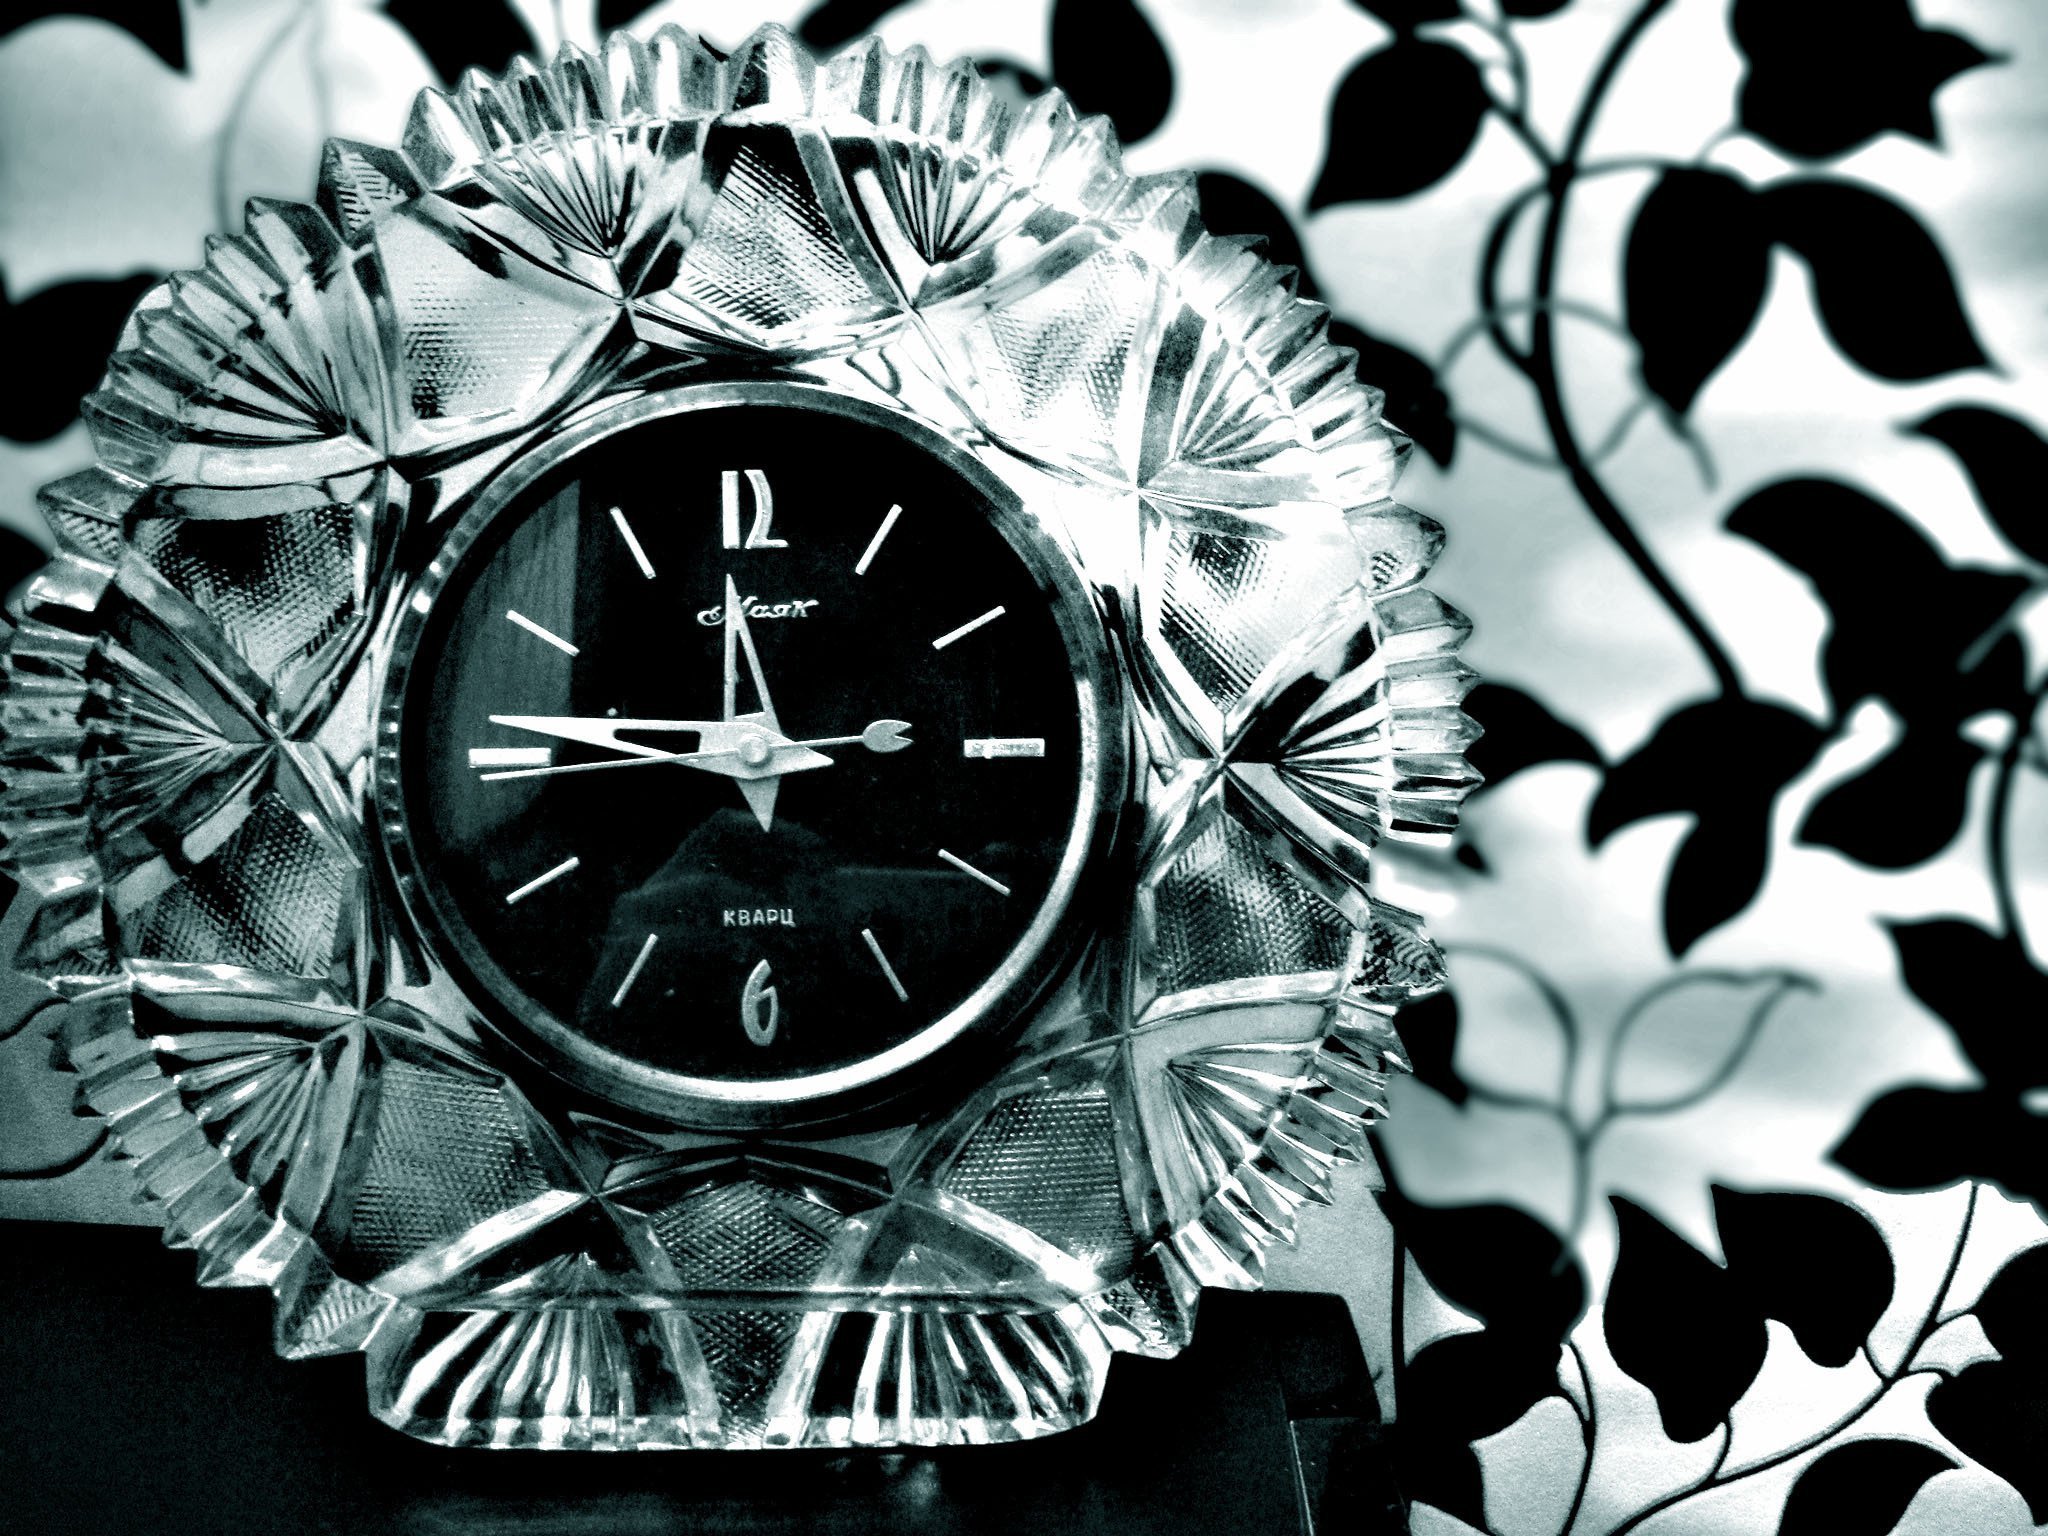 Фото обоев на часы. Красивые часы. Часы абстракция. Красивый фон для часов. Стильные часы на заставку.